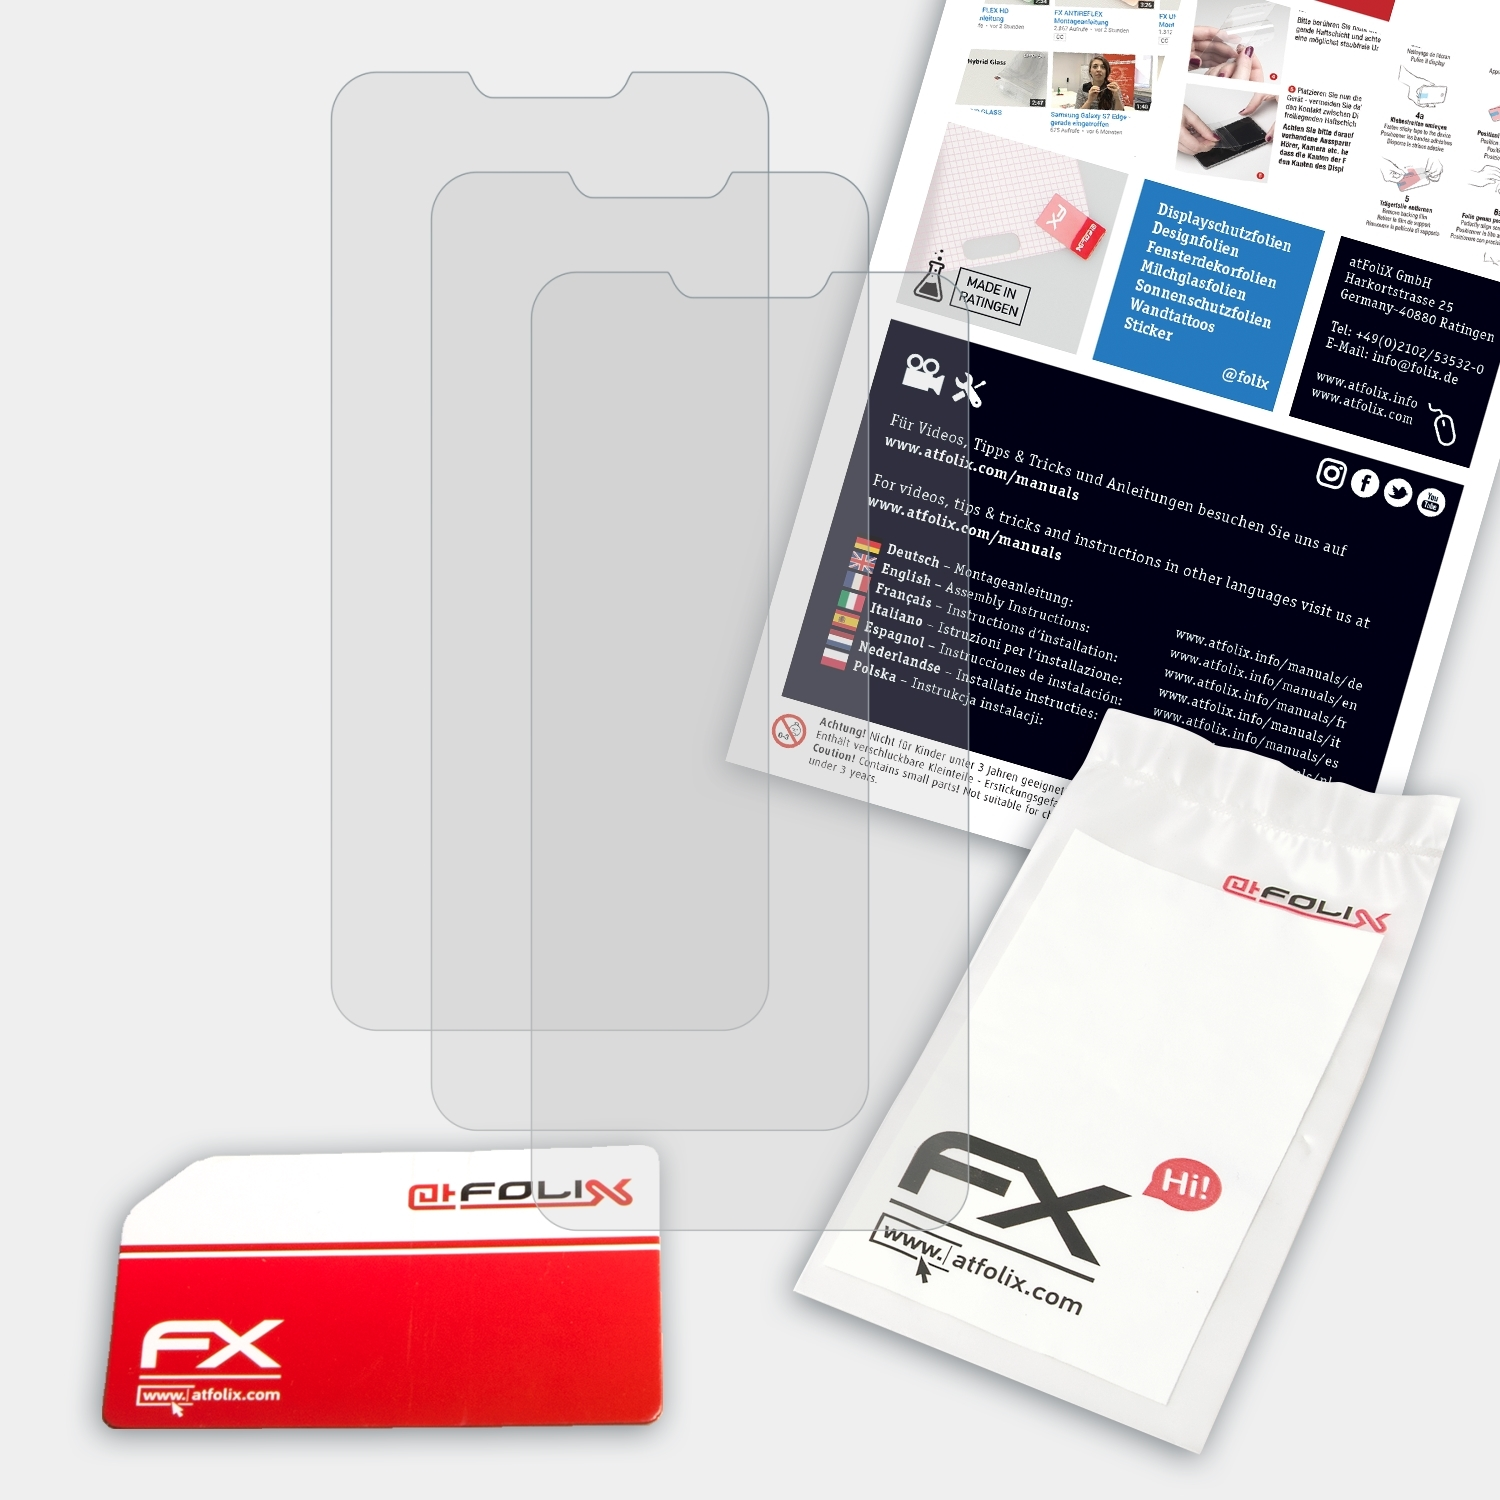 FX-Antireflex Oppo AX5) 3x ATFOLIX Displayschutz(für